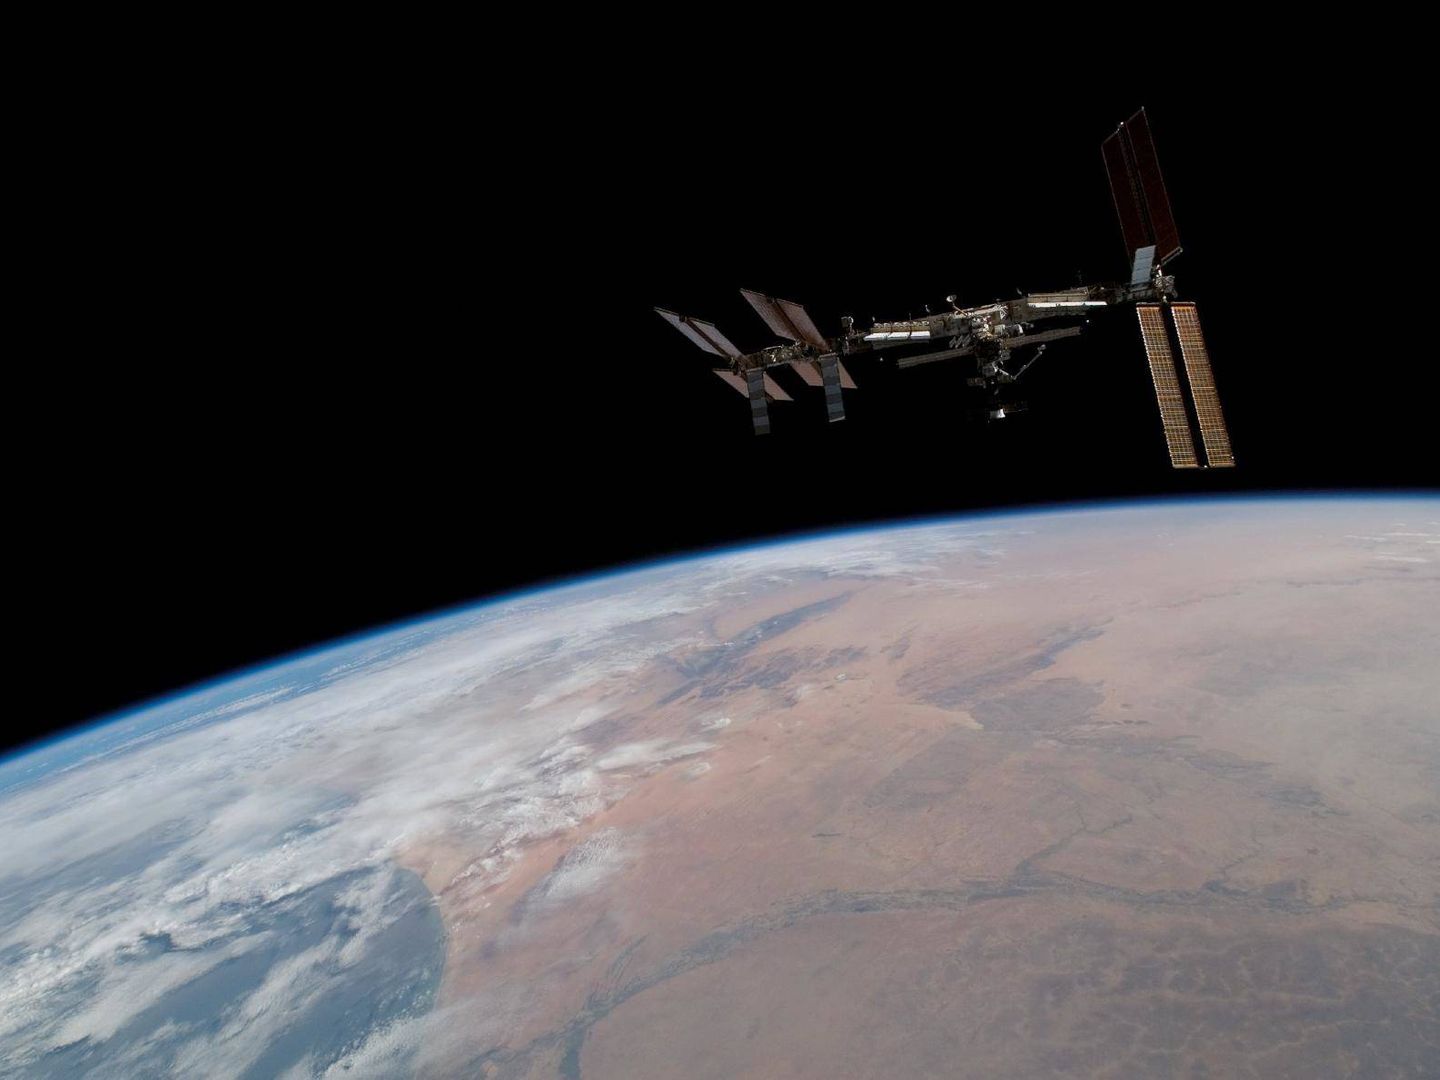 Una foto de la ISS en el espacio tomada desde una nave en aproximación